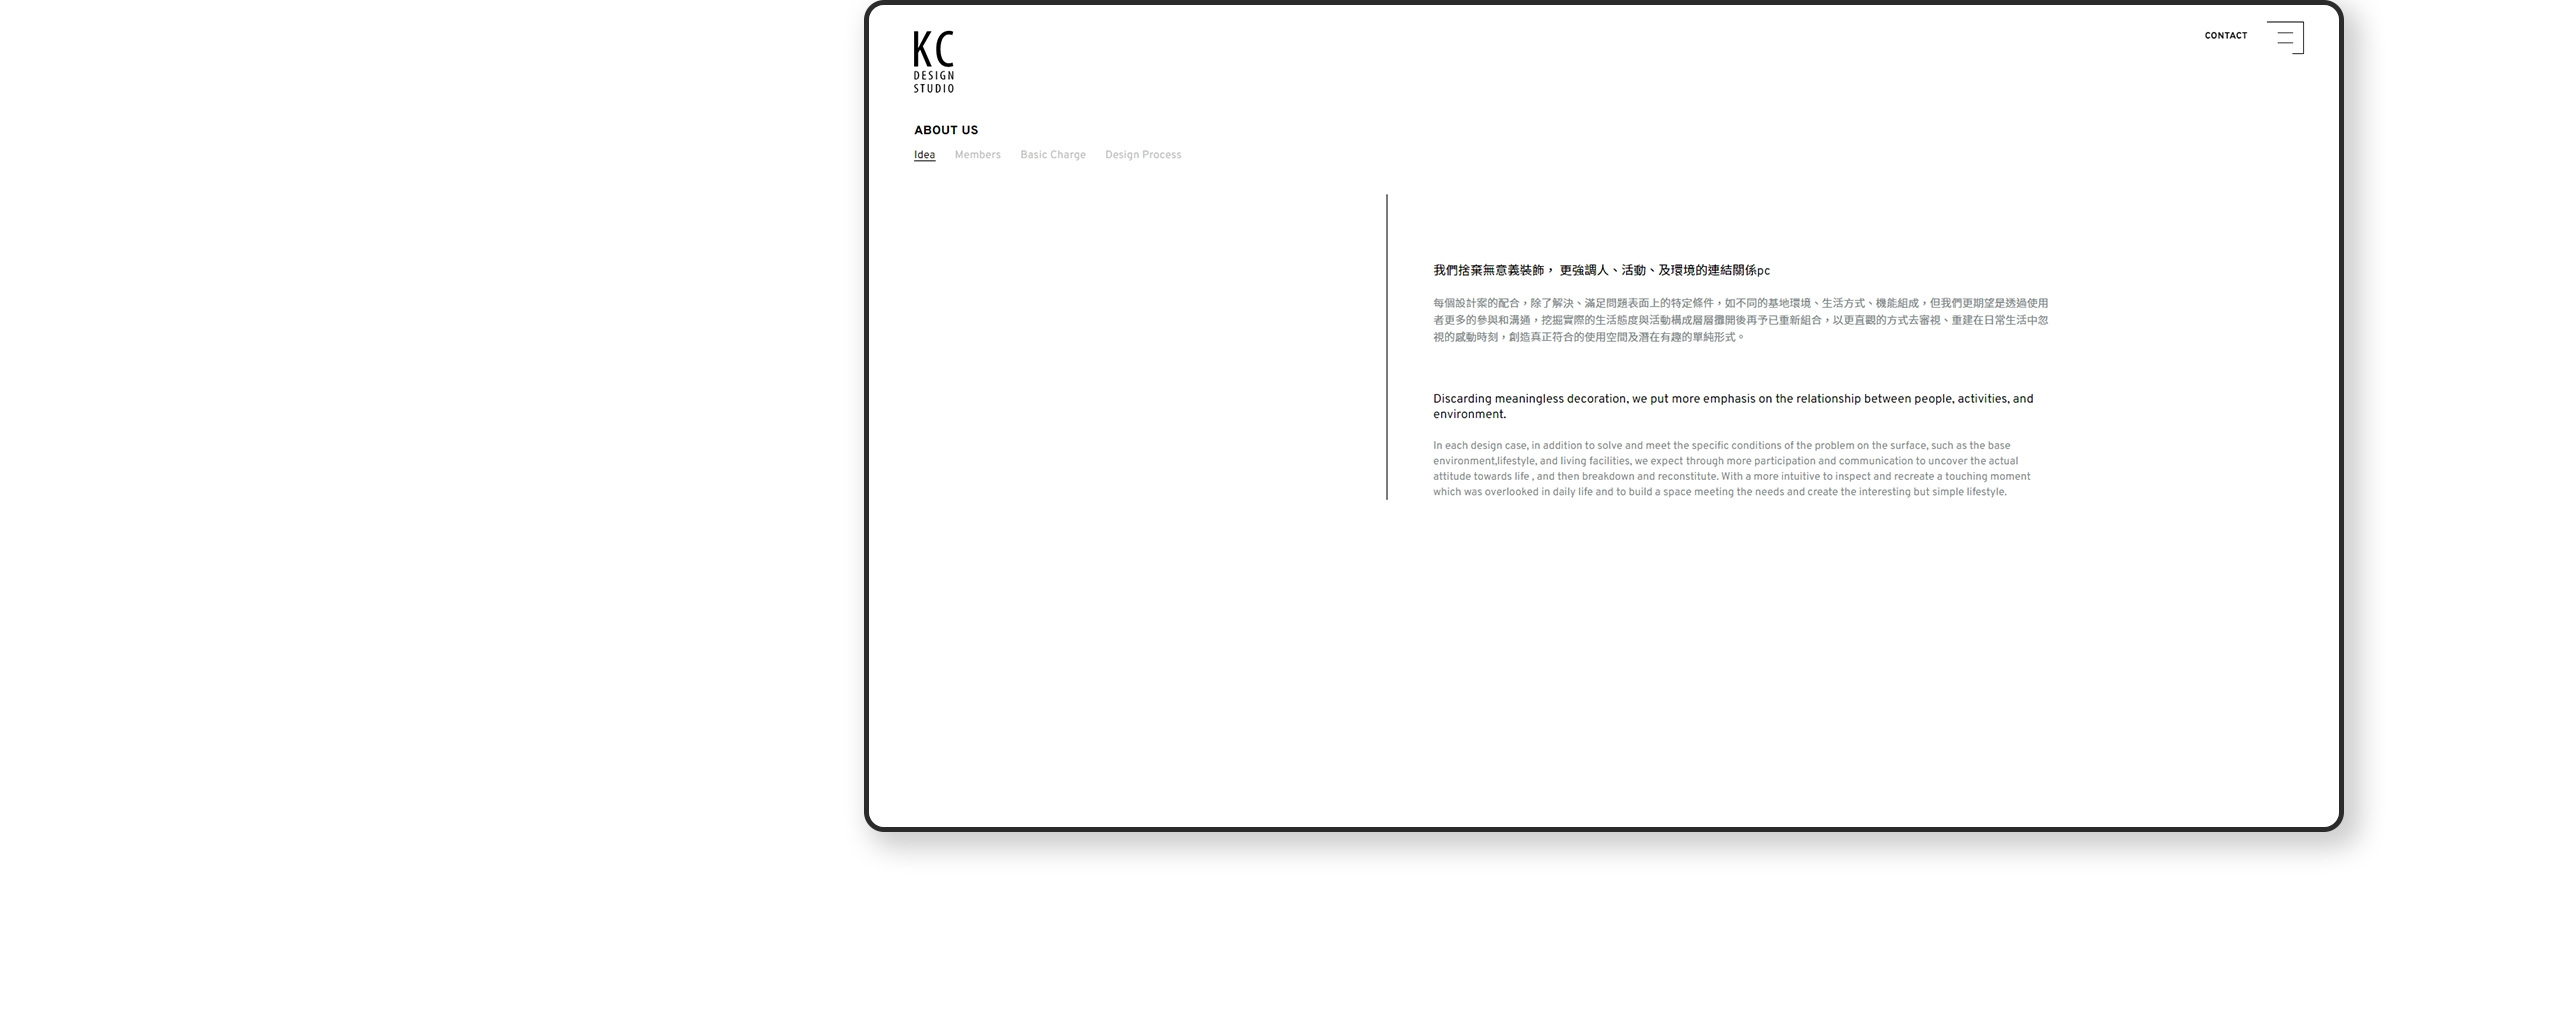 台北 KC DESIGN RWD形象官網/網站設計/動態網站設計/形象官網設計 電腦版(四)